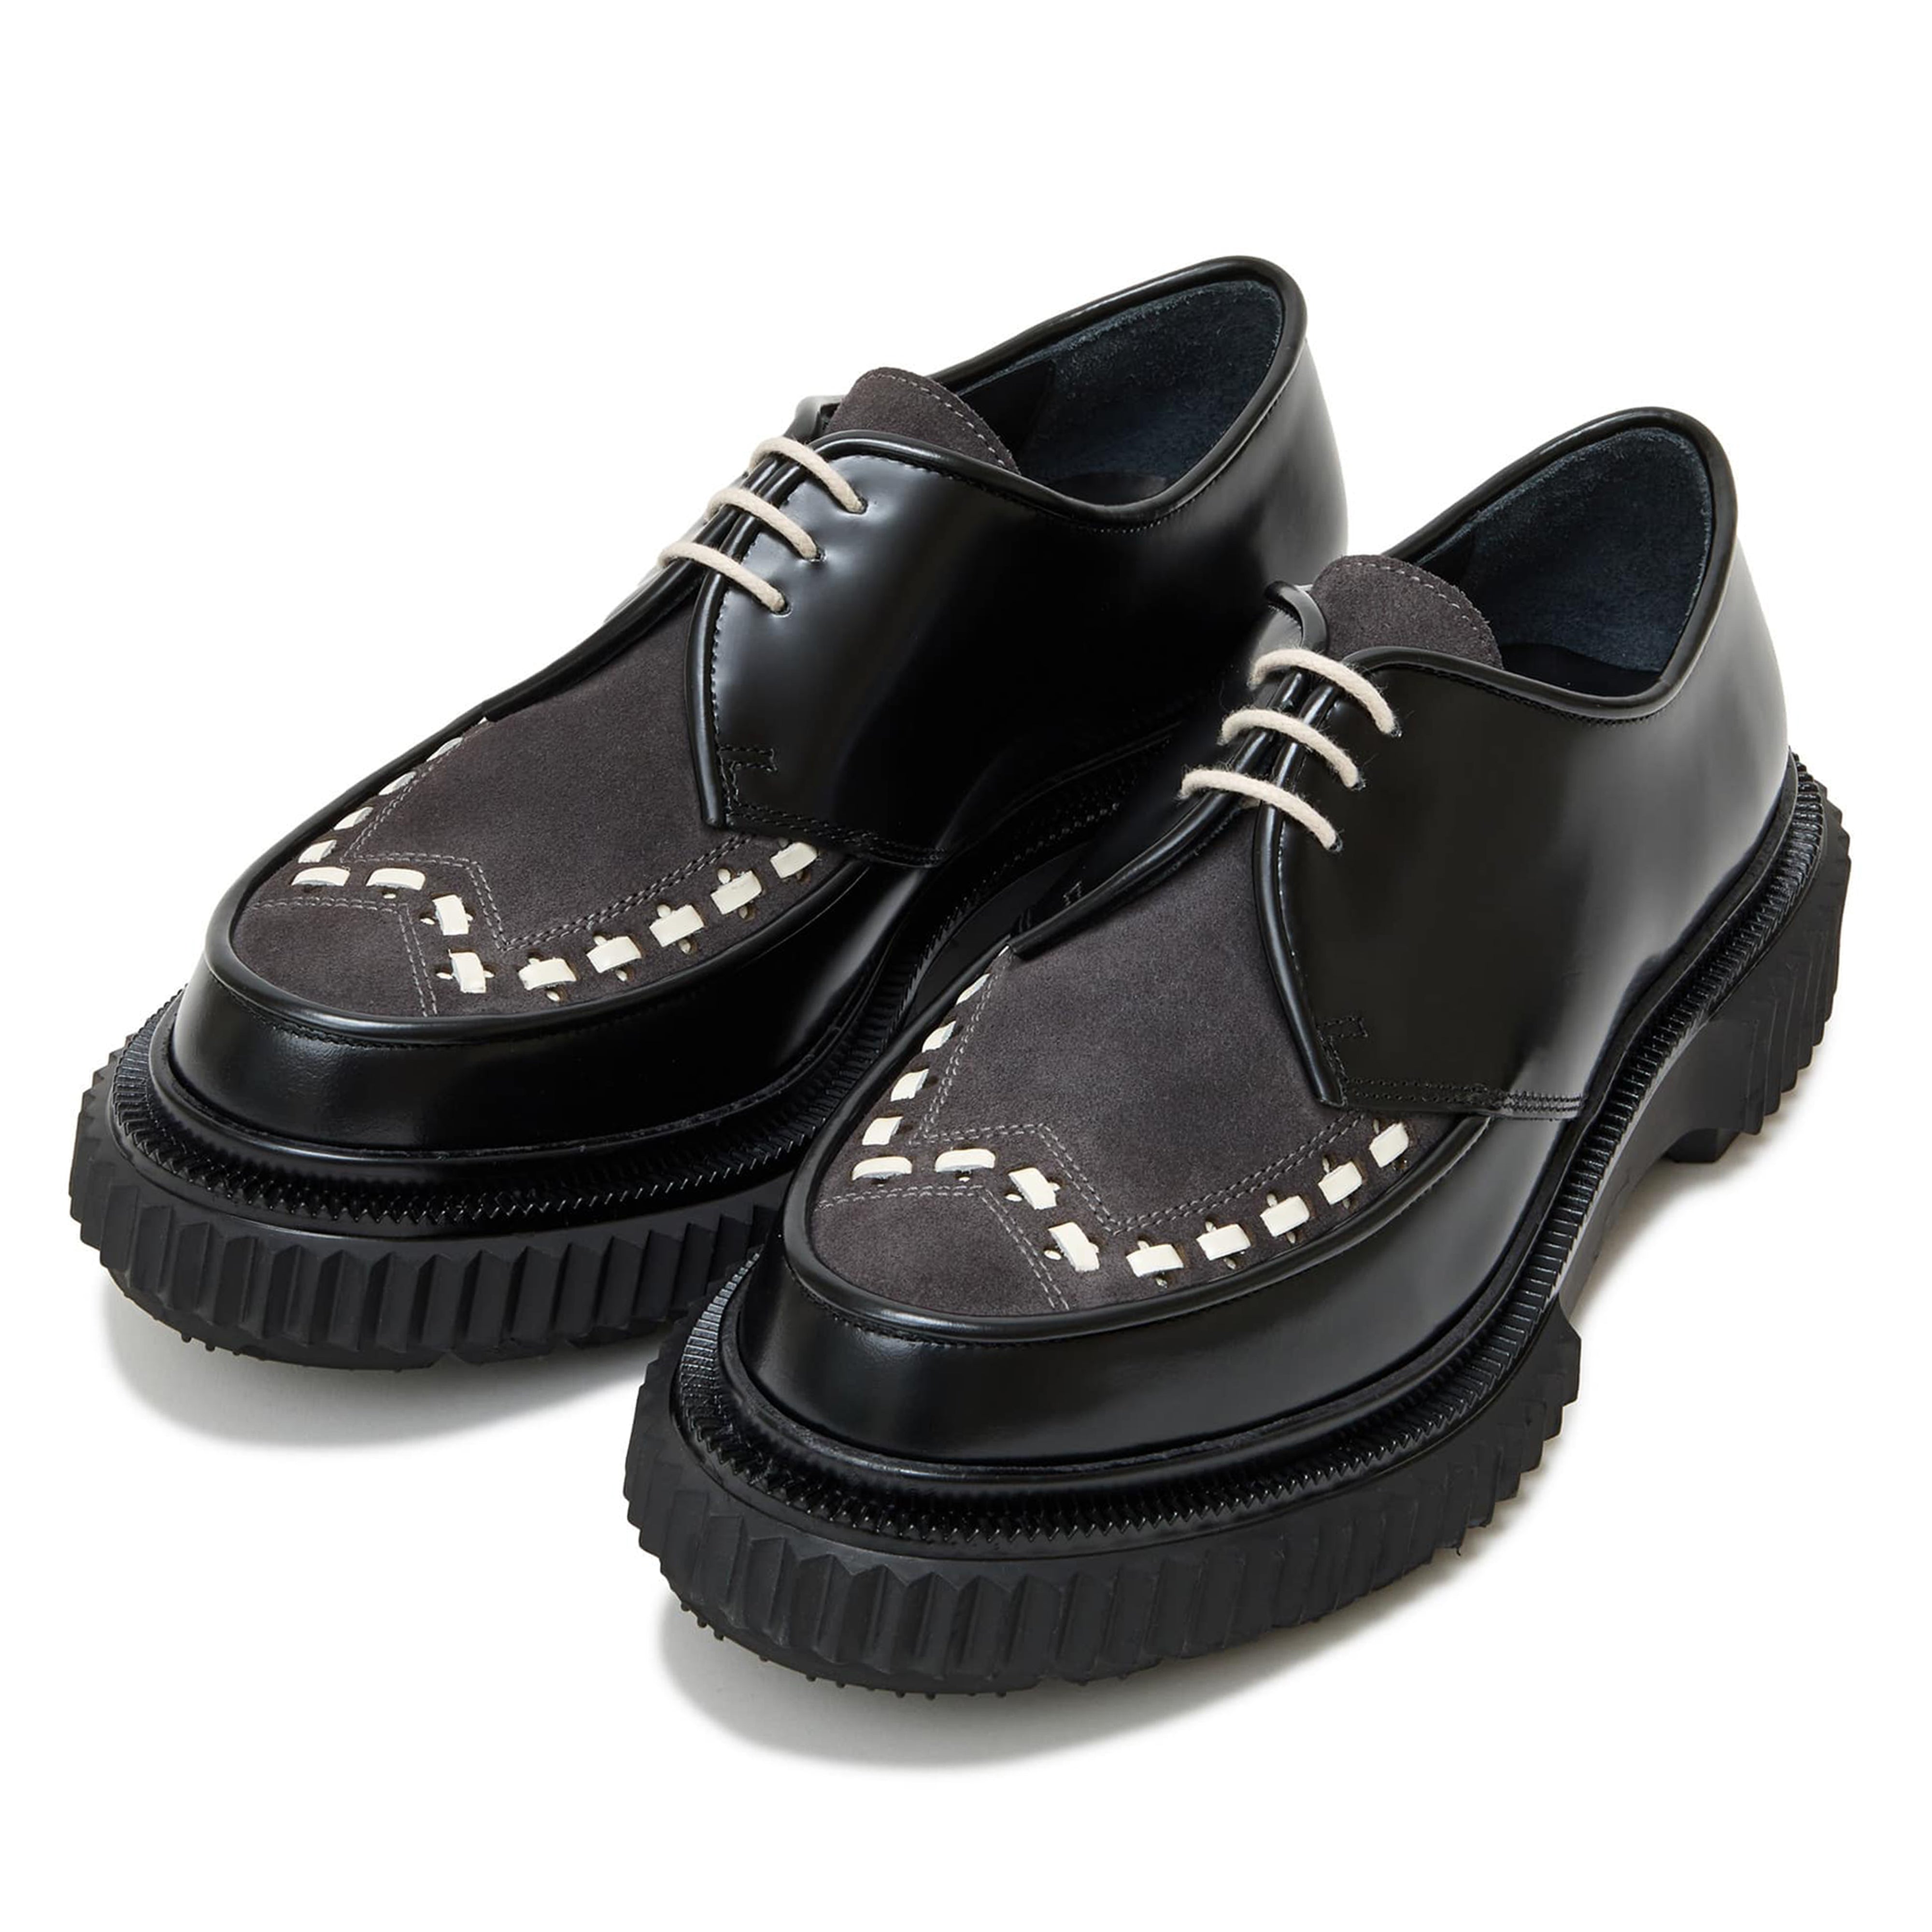 Undercover - Men's Adieu Type 195 Shoe - (Black/Ivory) – DSMNY E-SHOP